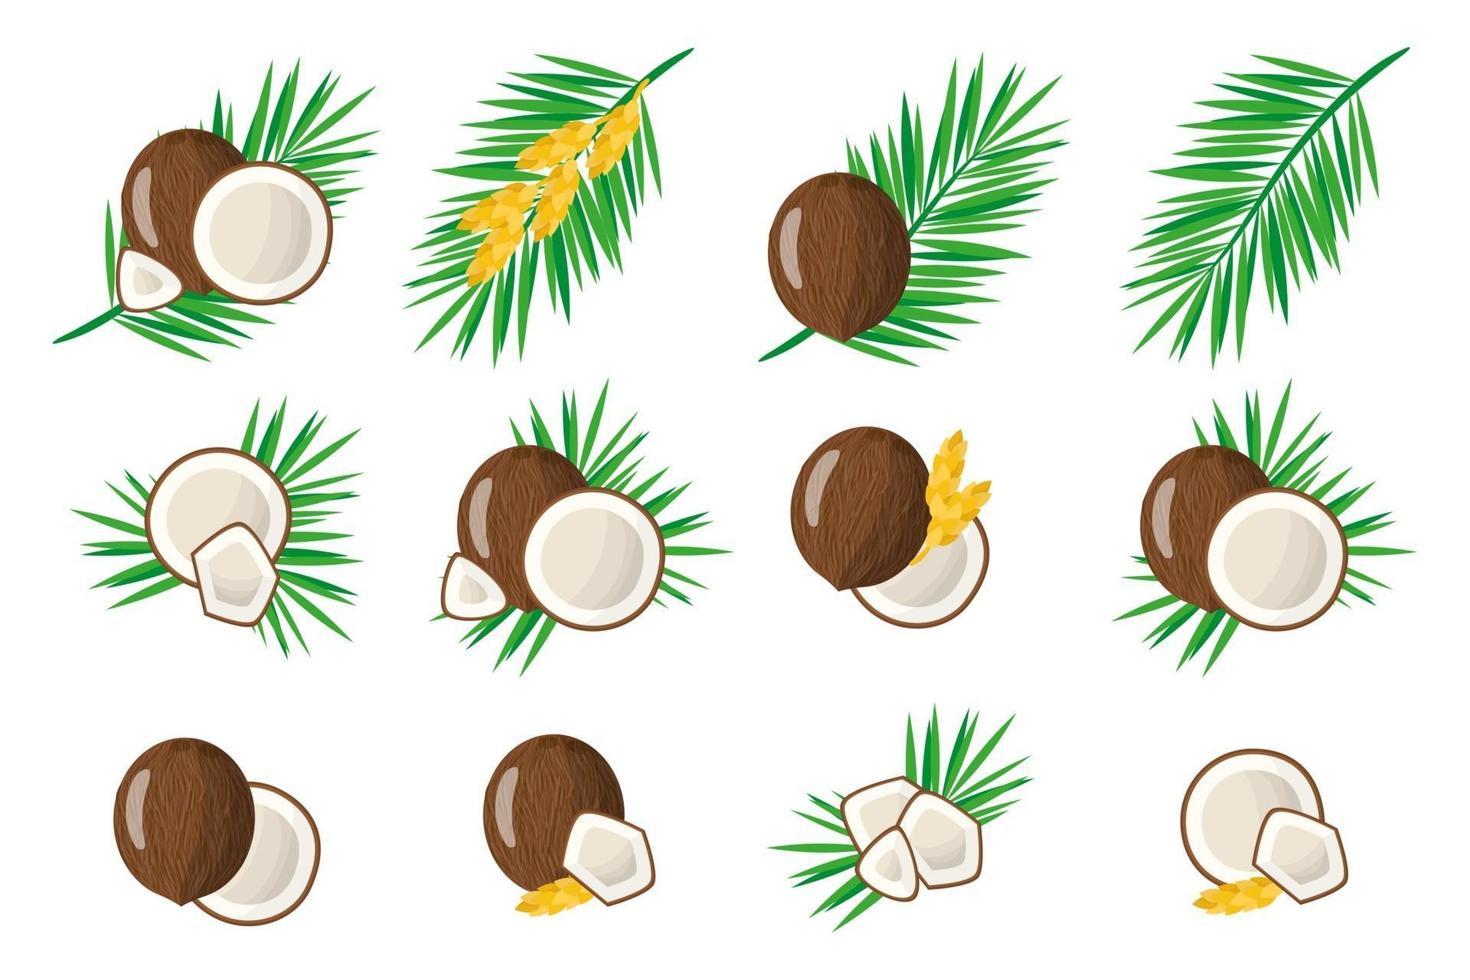 Satz Illustrationen mit exotischen Kokosnussfrüchten, Blumen und Blättern lokalisiert auf einem weißen Hintergrund. vektor